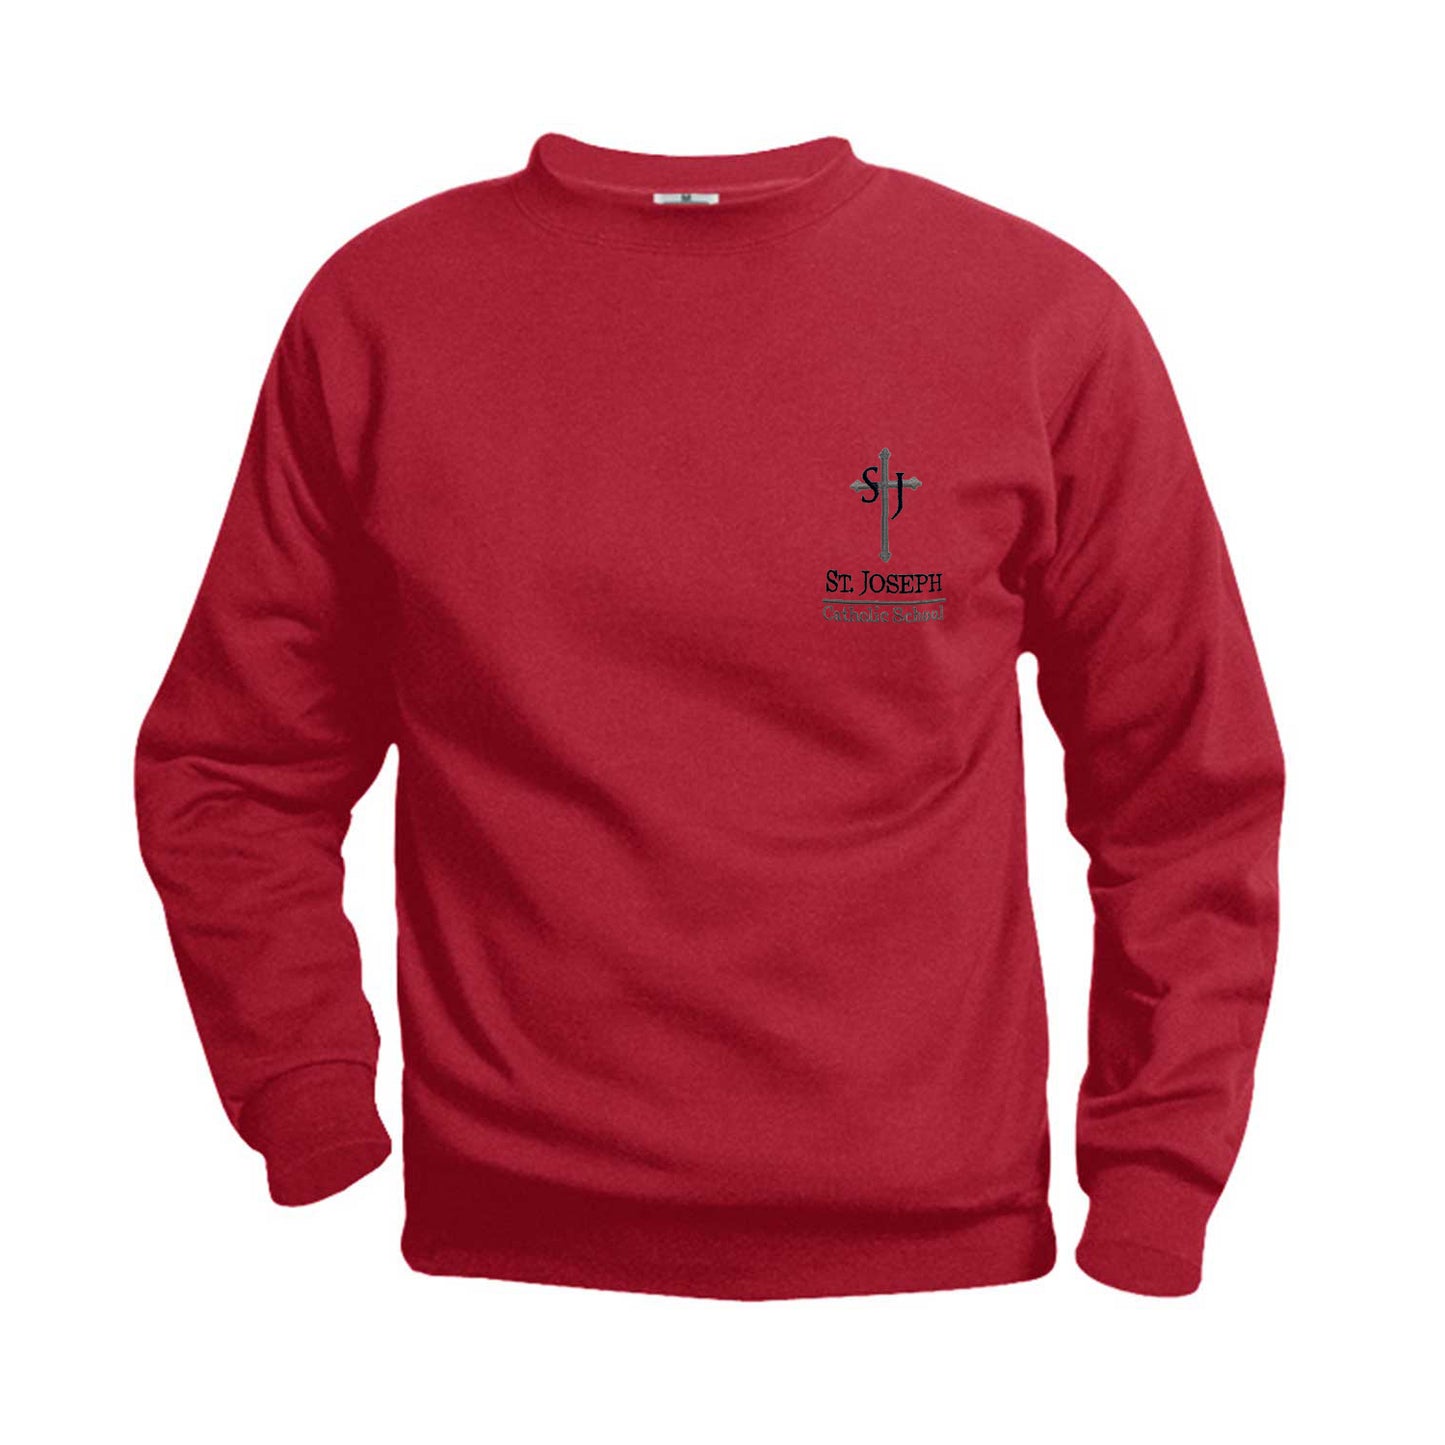 Adult Sweatshirt With St. Joesph Logo